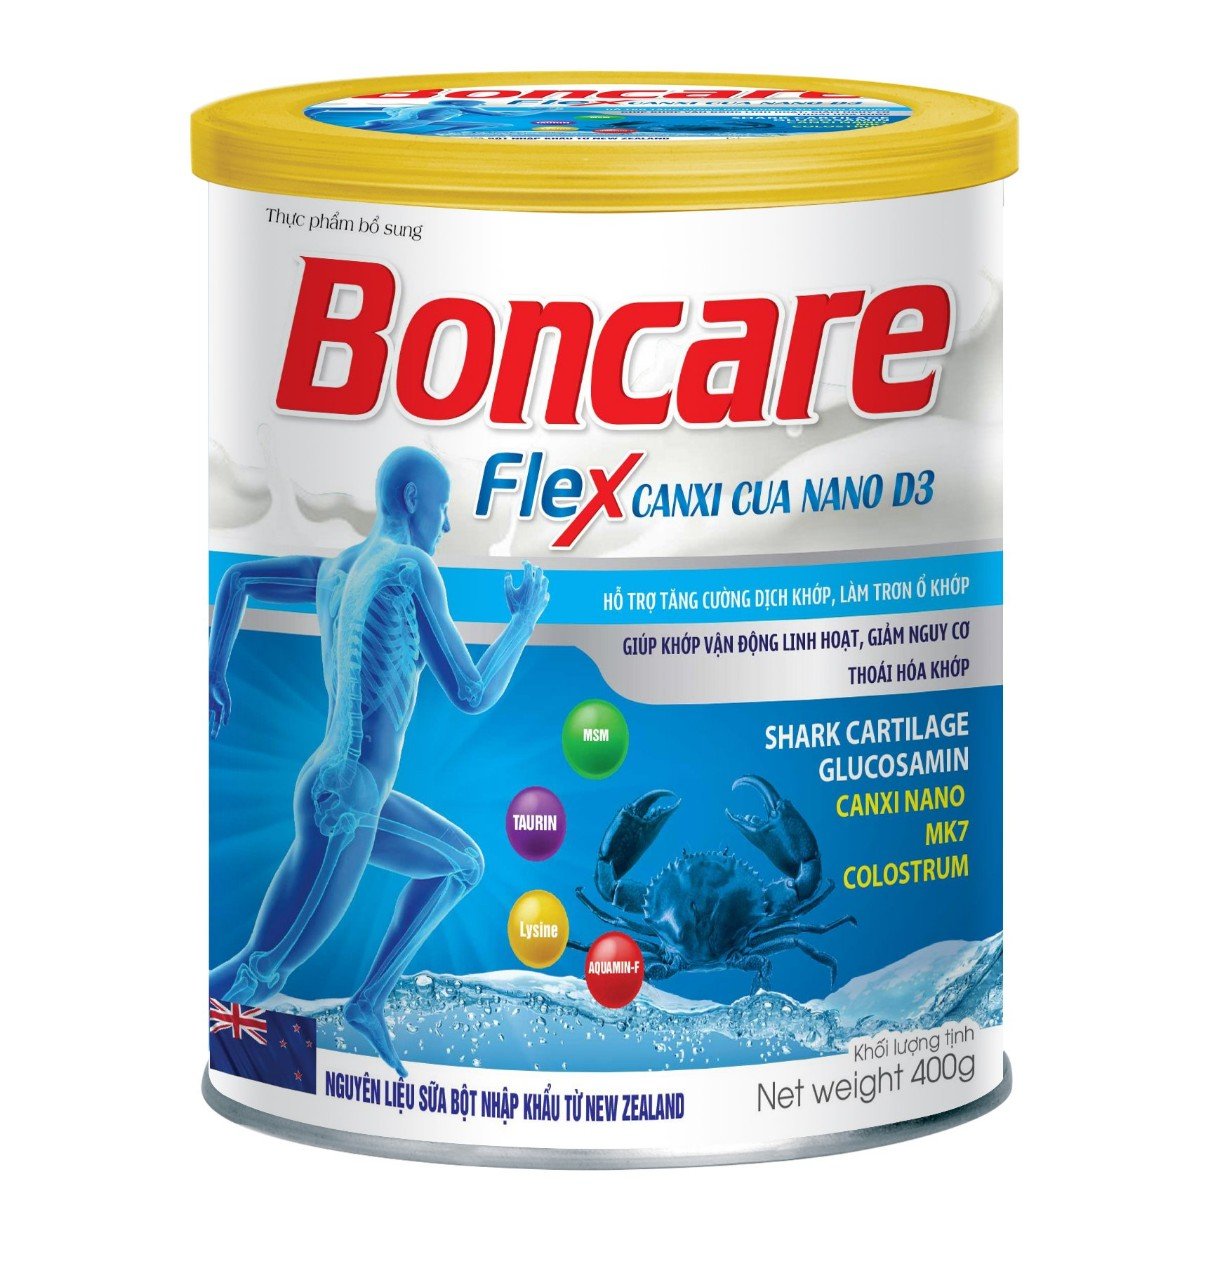 Sữa Bột Boncare Flex Canxi Cua Nano D3 với thành phần sụn vi cá mập glucosamine canxi nano MK7 Hỗ trợ tăng cường dịch khớp làm trơn ổ khớp giảm đau nhức xương khớp giúp khớp vận động linh hoạt- hộp 400g - Nhất Tâm Pharma